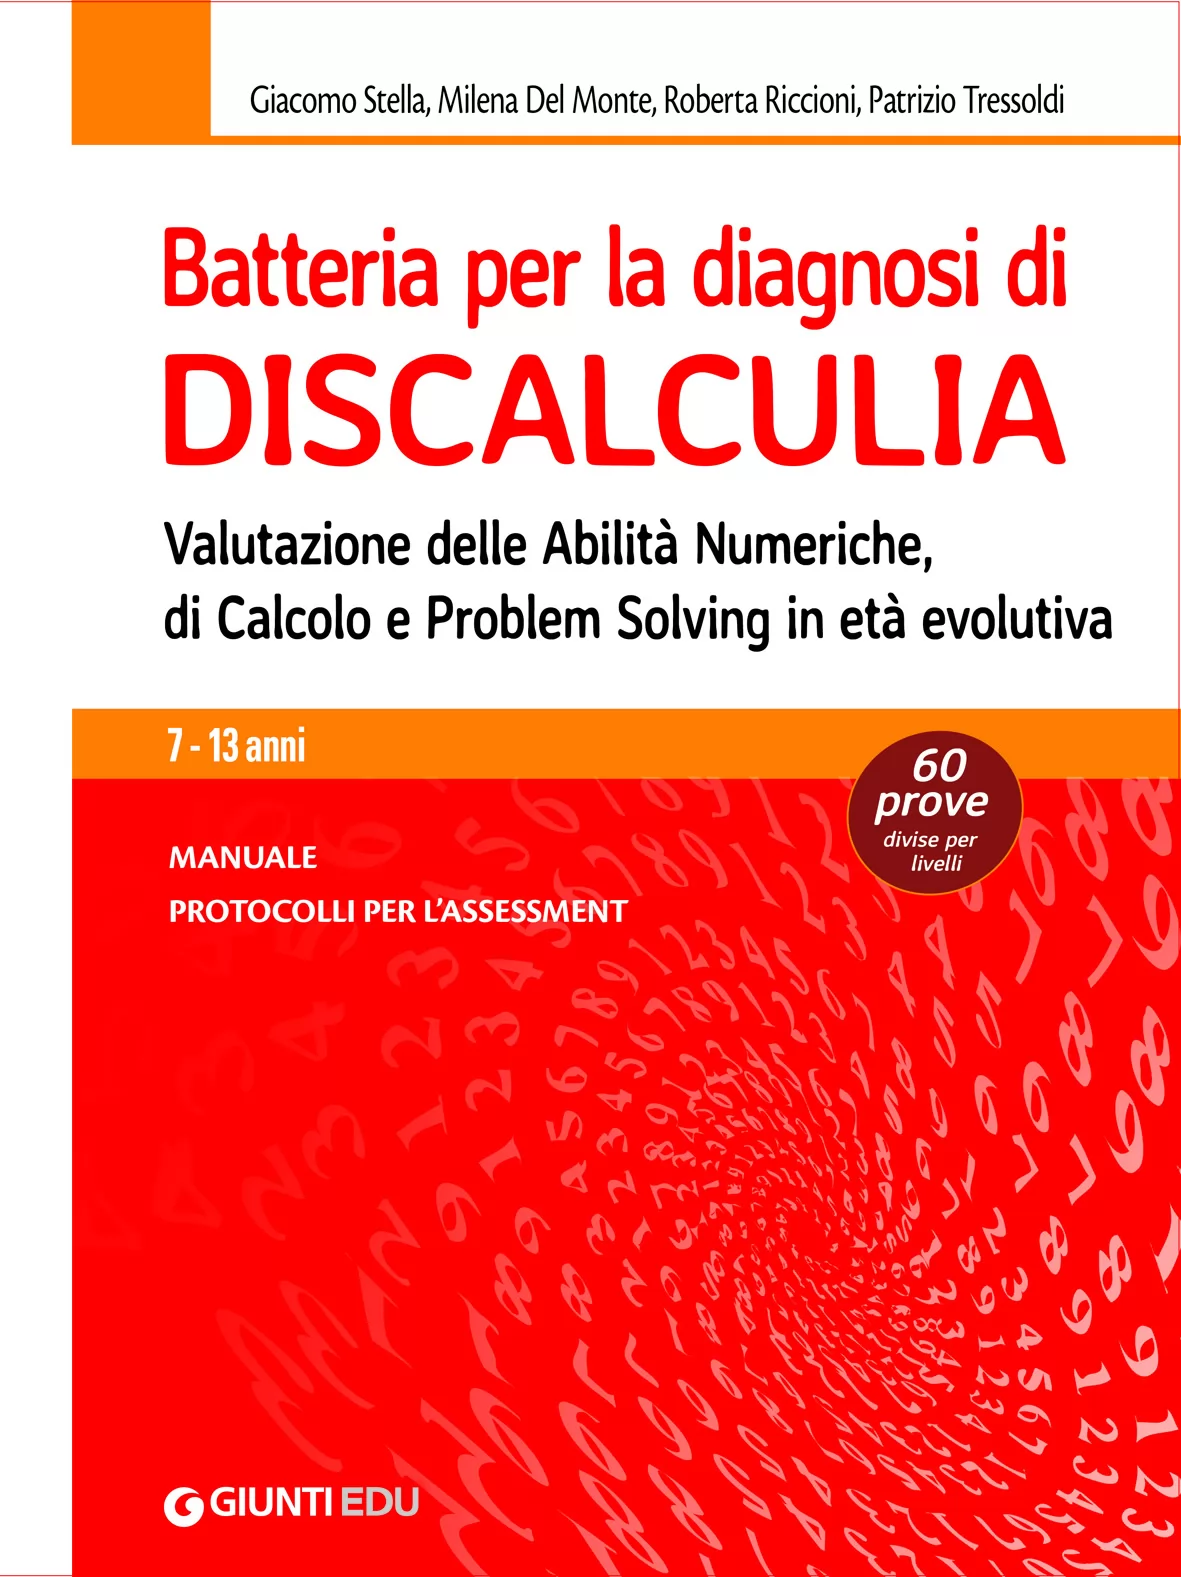 SC311 - <p>Batteria per la diagnosi di Discalculia</p>
